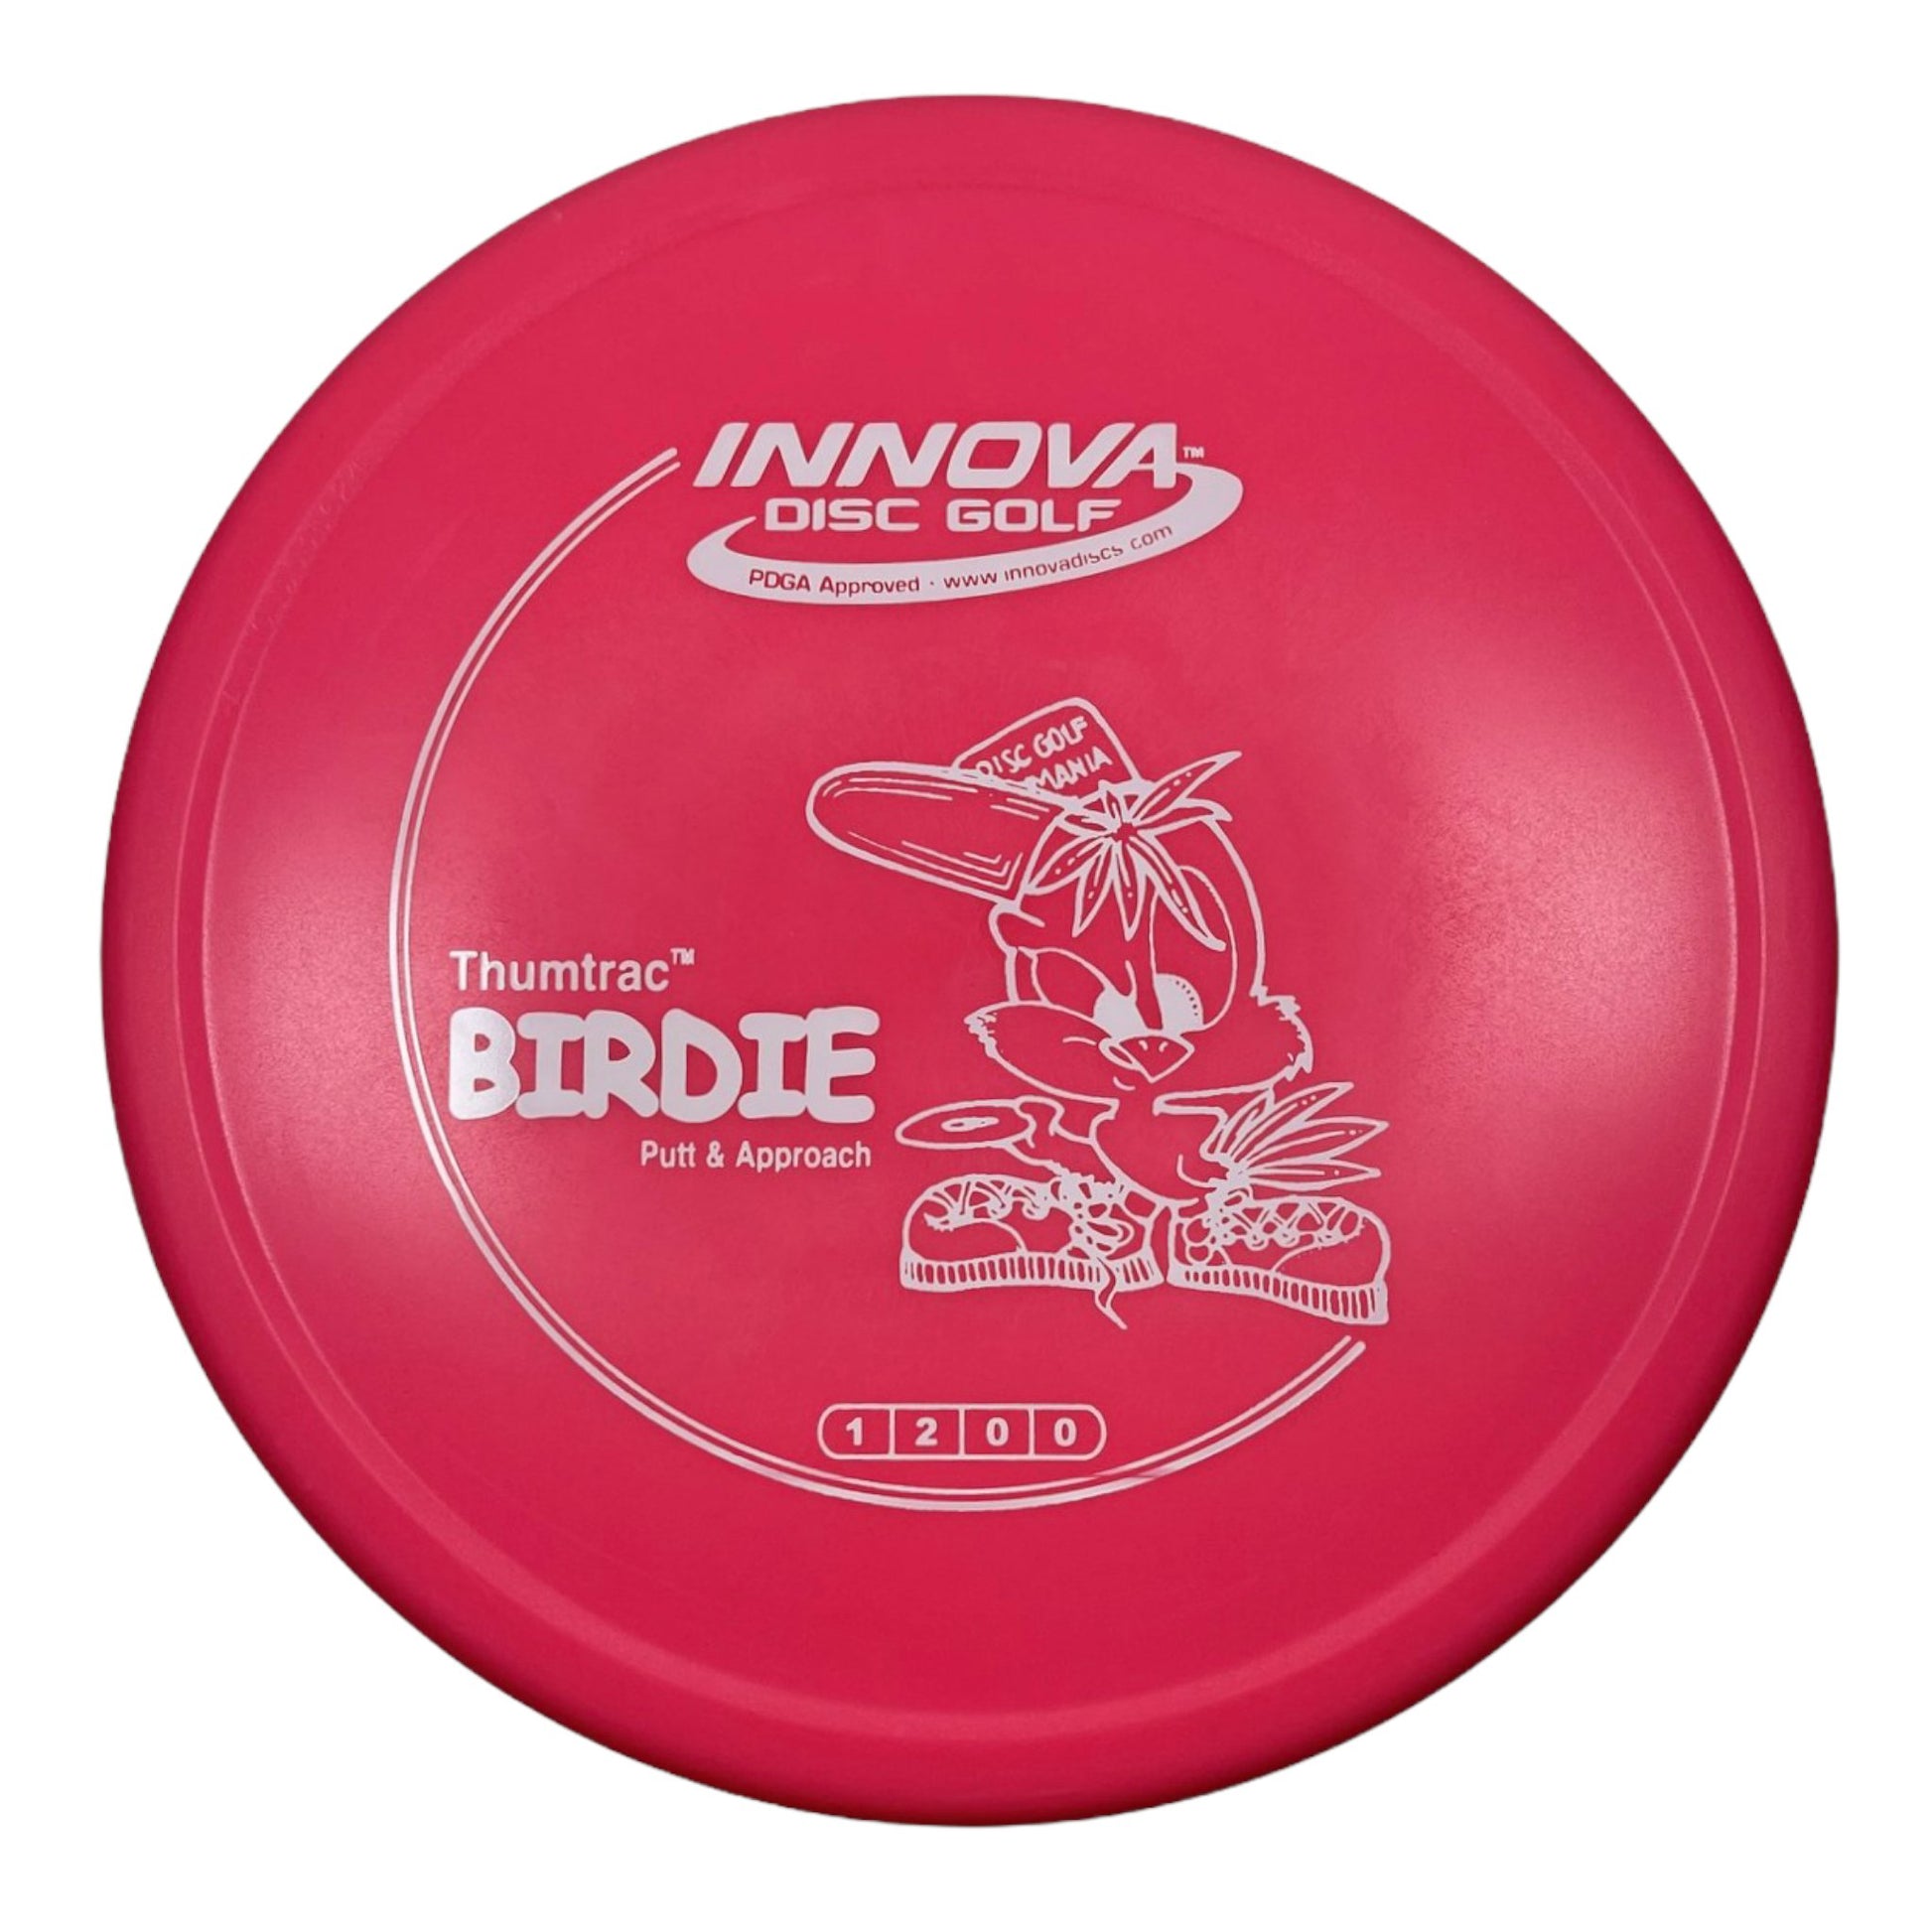 Innova Champion Discs Birdie | DX | Pink/White 169g Disc Golf